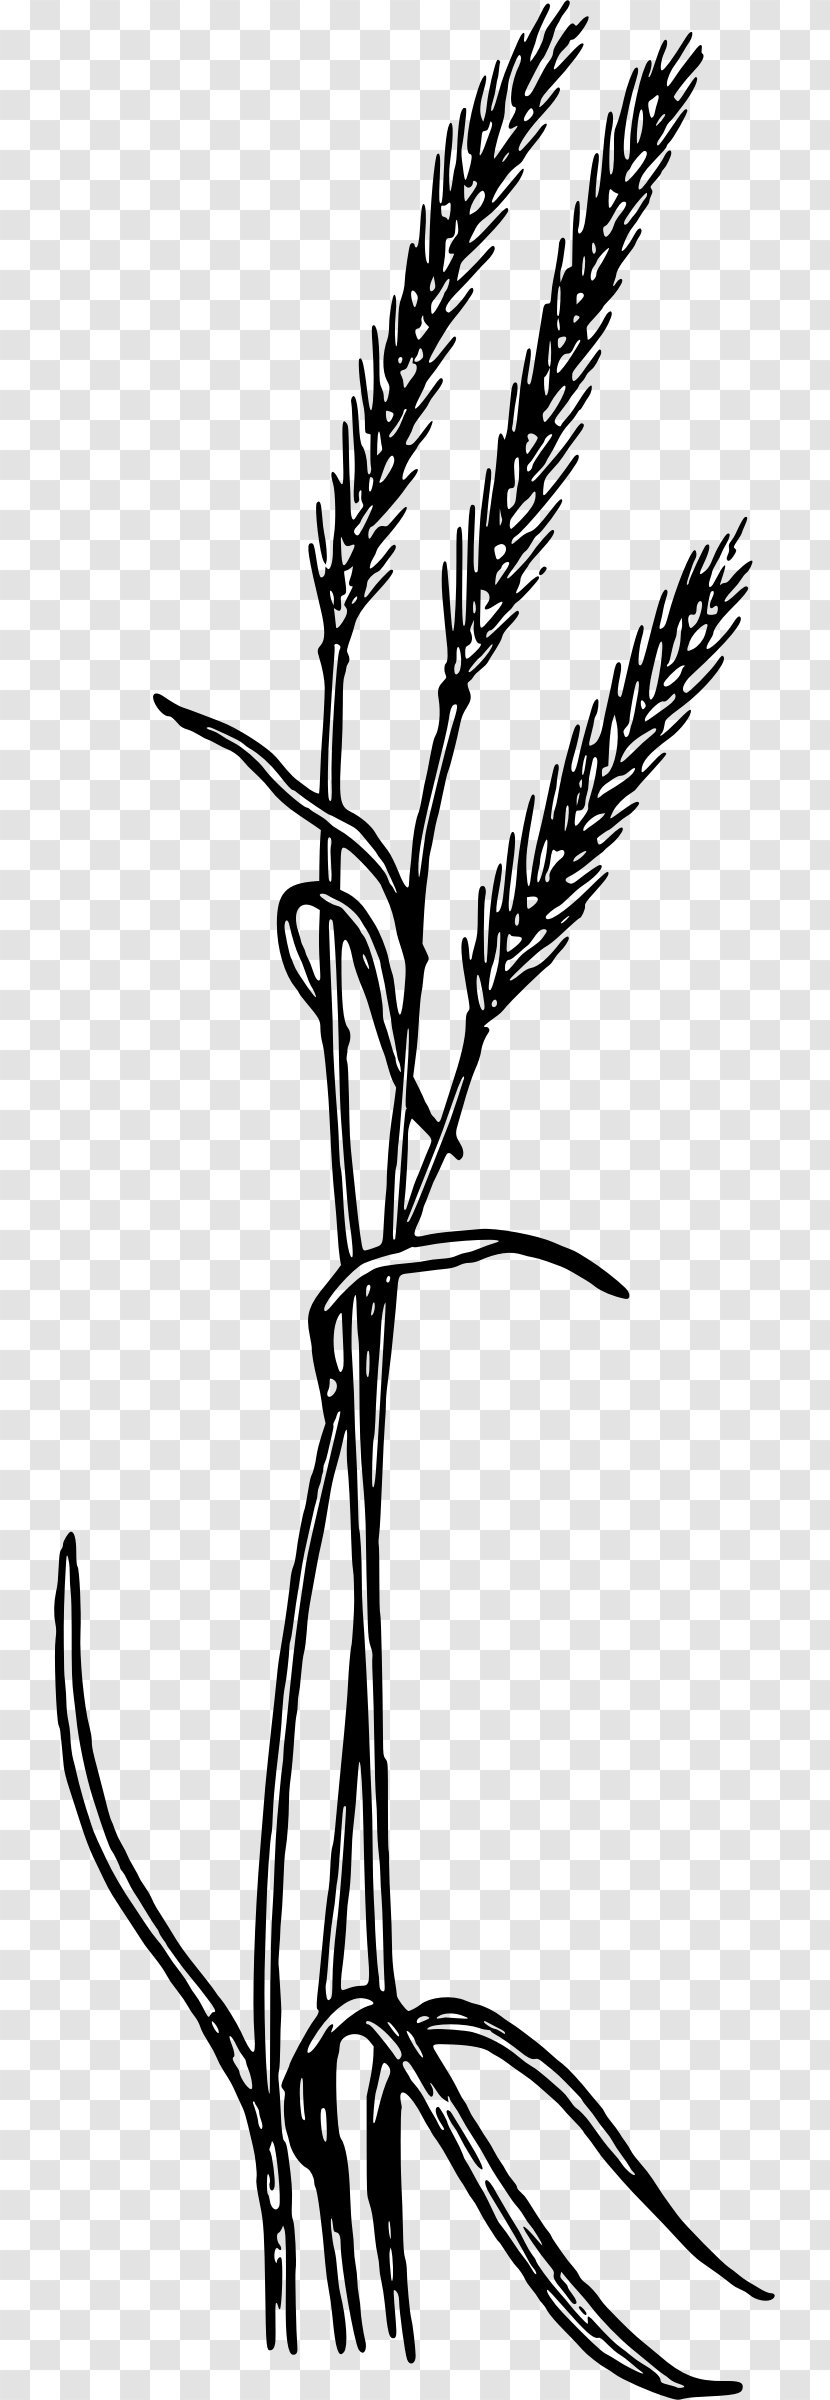 Rye Bread Clip Art - Flower - Cereal Grains Transparent PNG